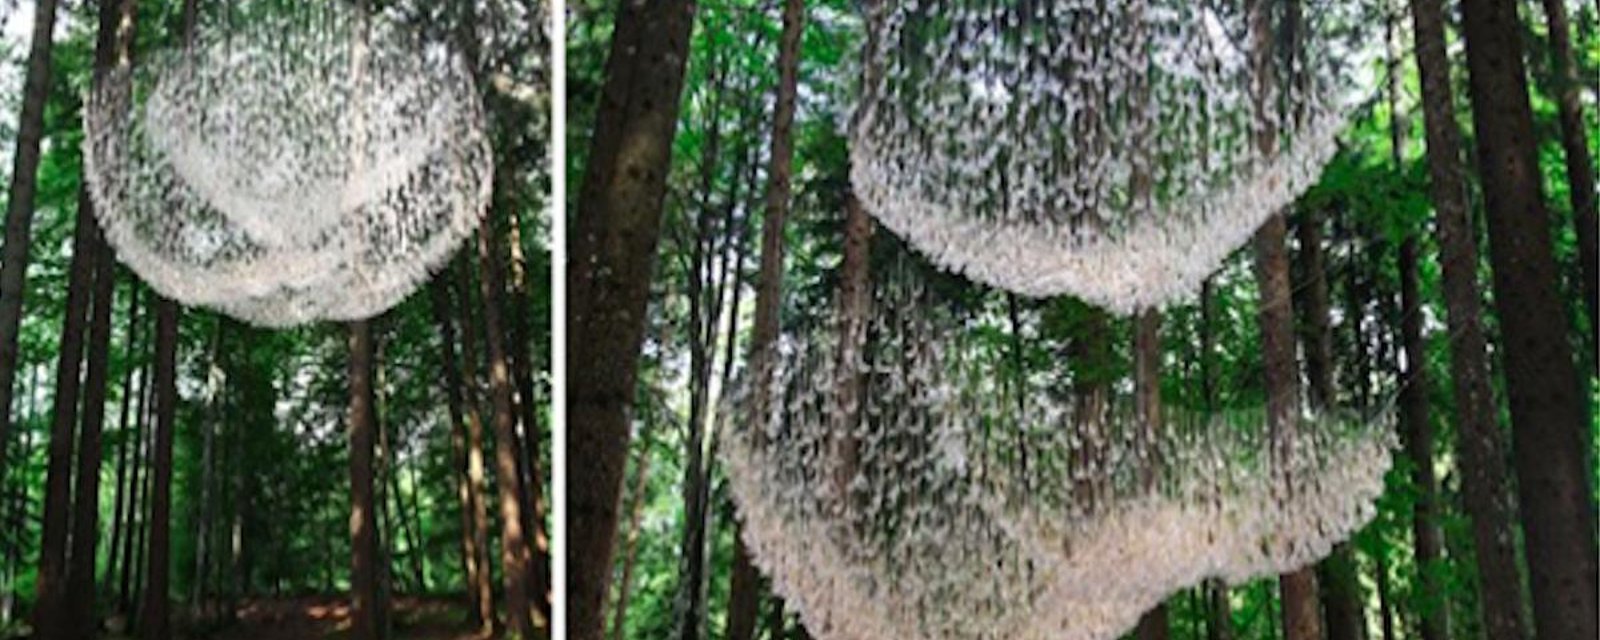 De toute beauté: un lustre géant dans la forêt fait de minuscules capteurs d'eau de pluie